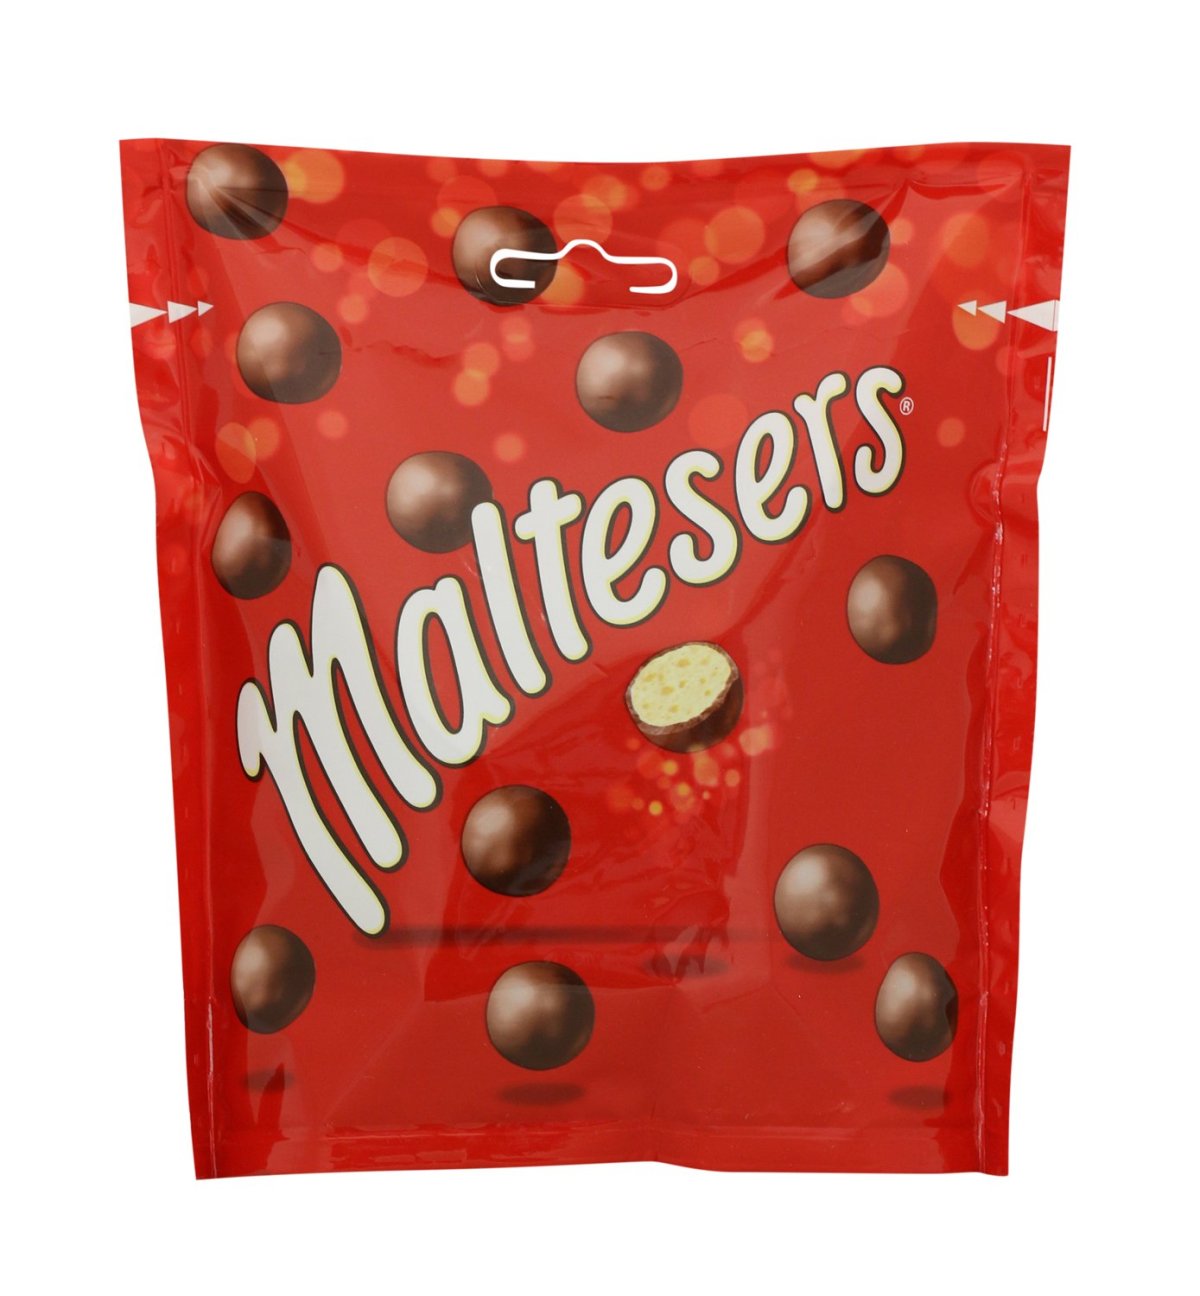 Конфеты шарики в шоколаде. Шоколадные шарики Maltesers. Шоколадное драже Мальтизерс. Шоколадные конфеты Maltesers. Конфеты Maltesers шоколадные шарики.